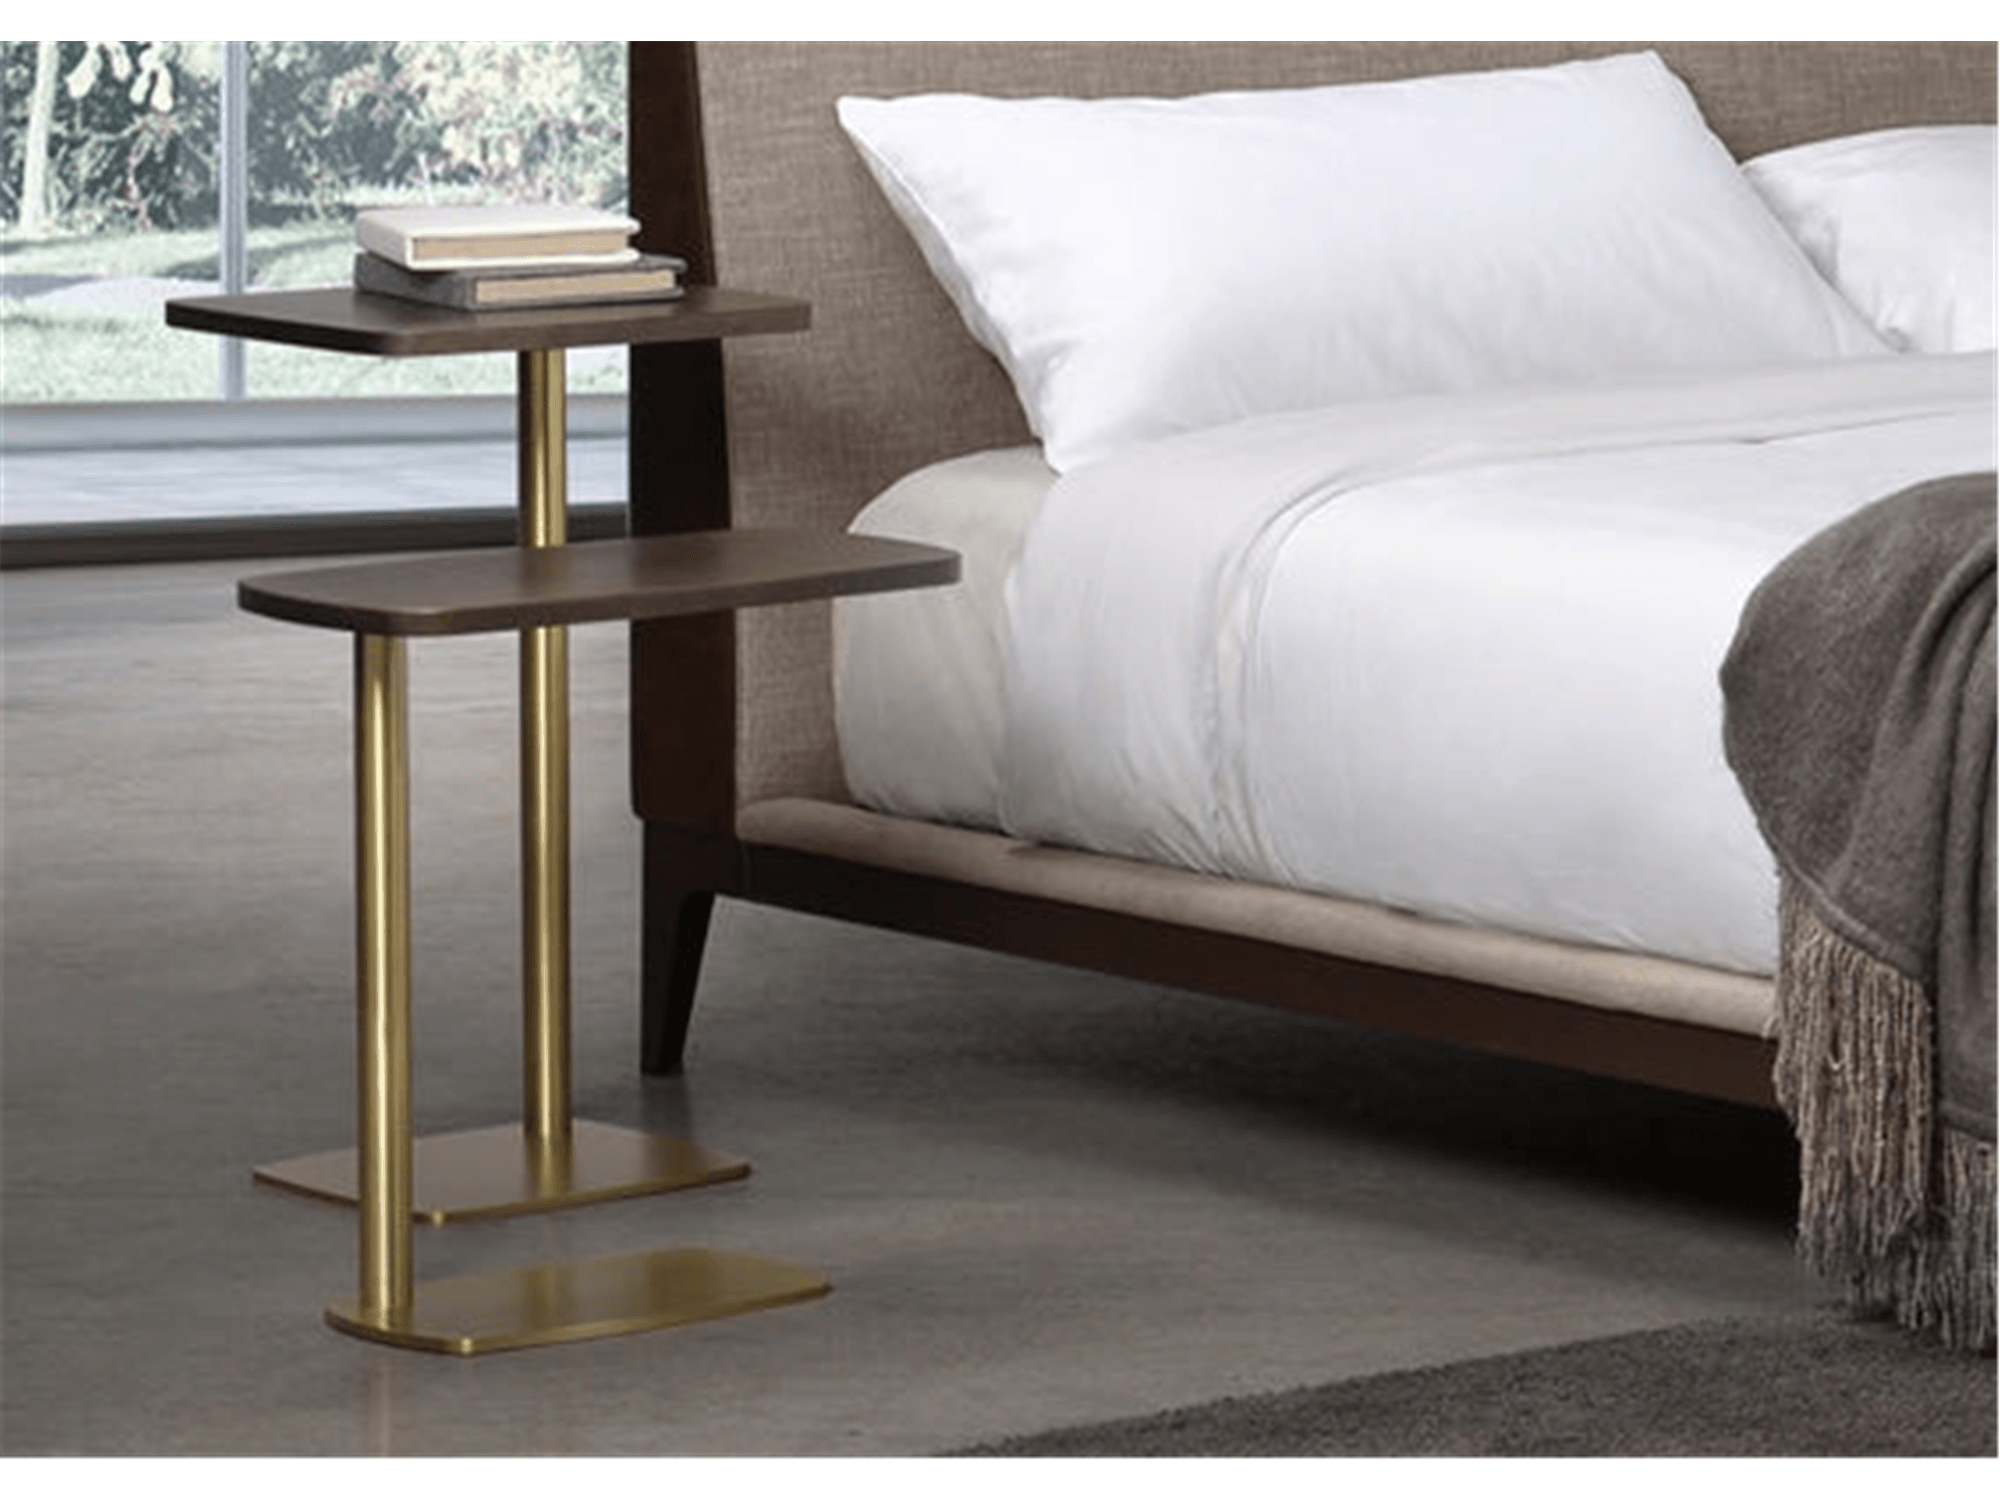 Picollo Table - Euro Living Furniture